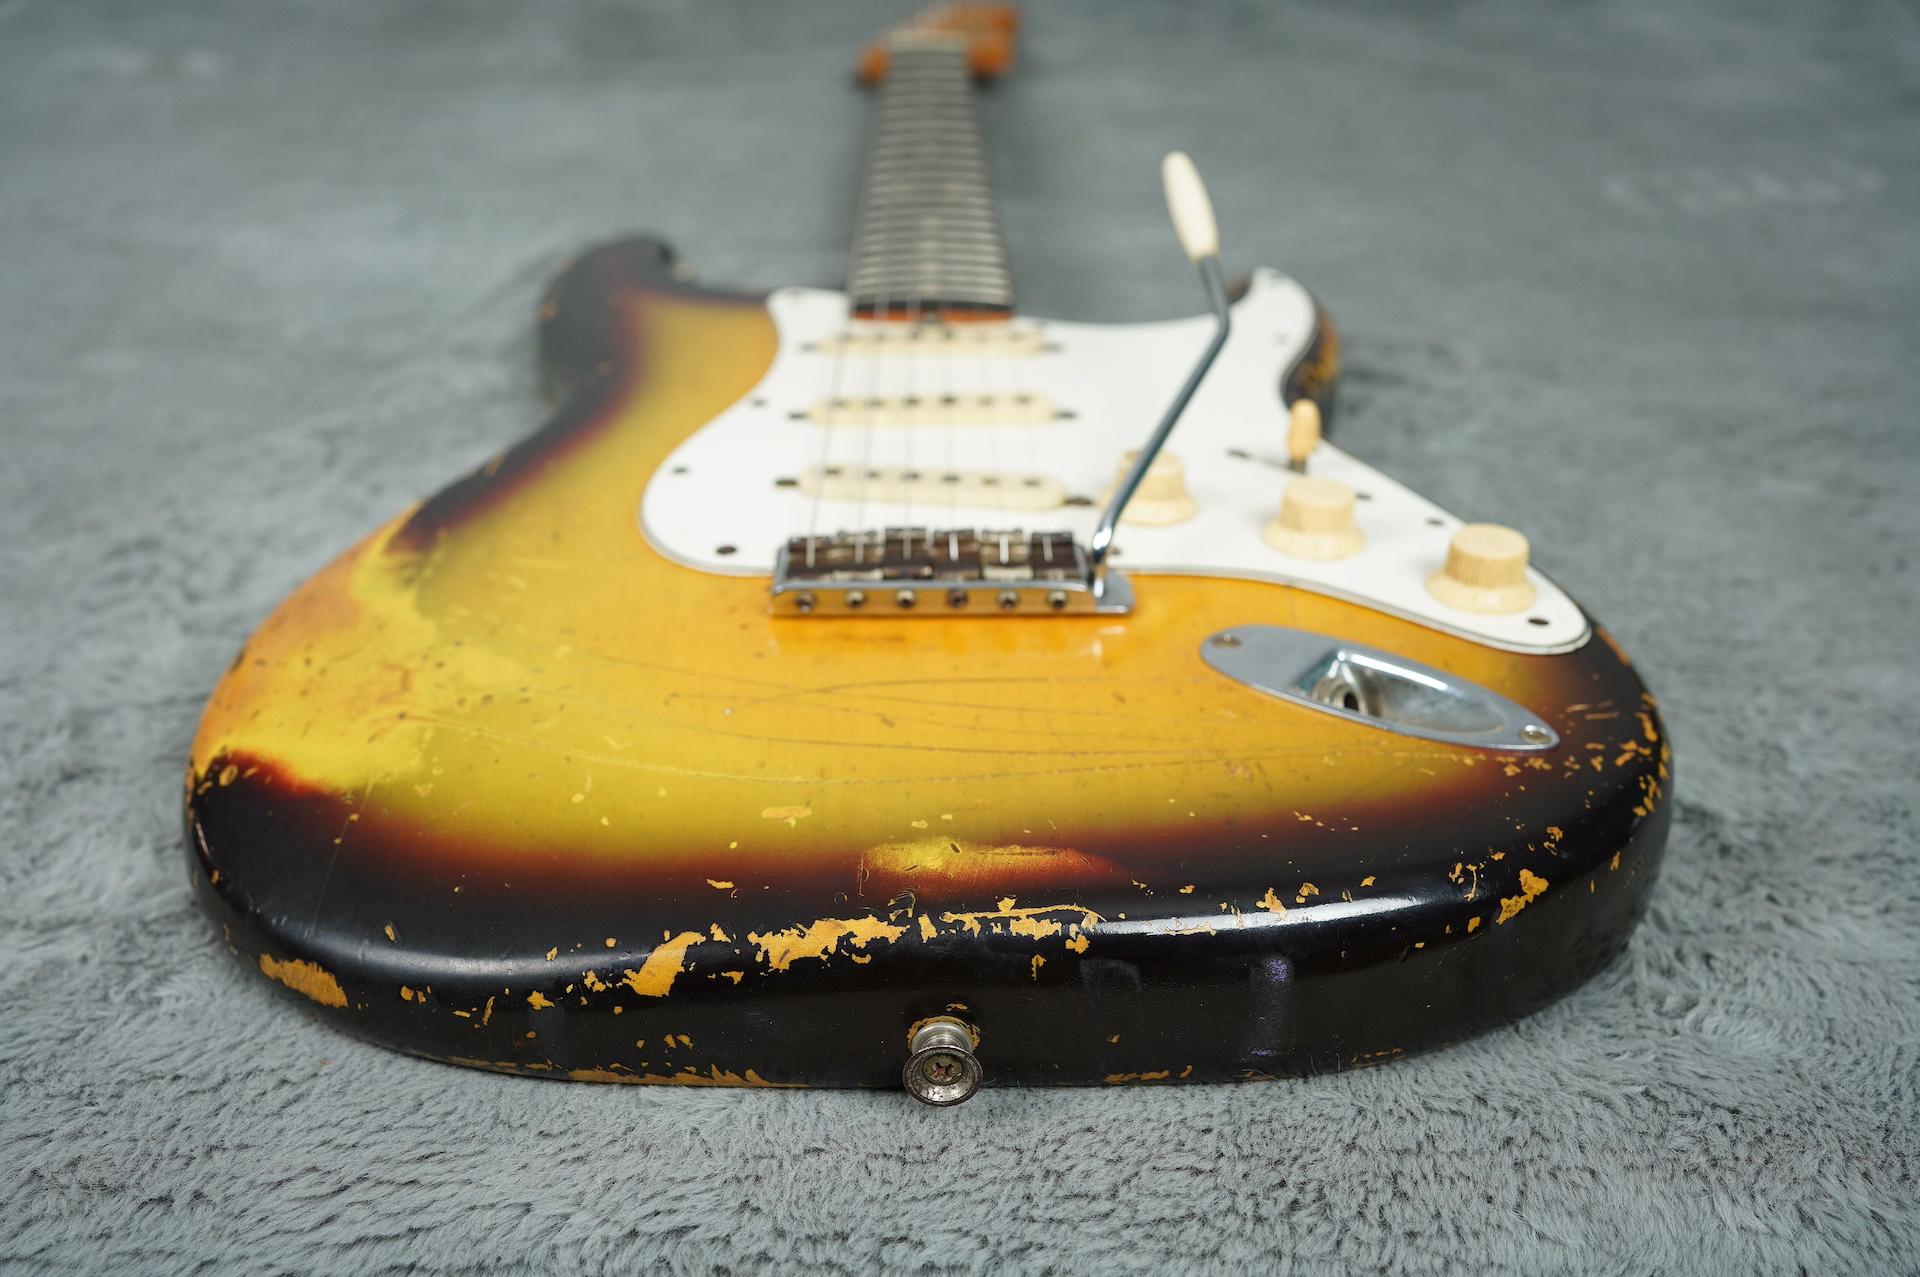 1965 Fender Stratocaster + OHSC